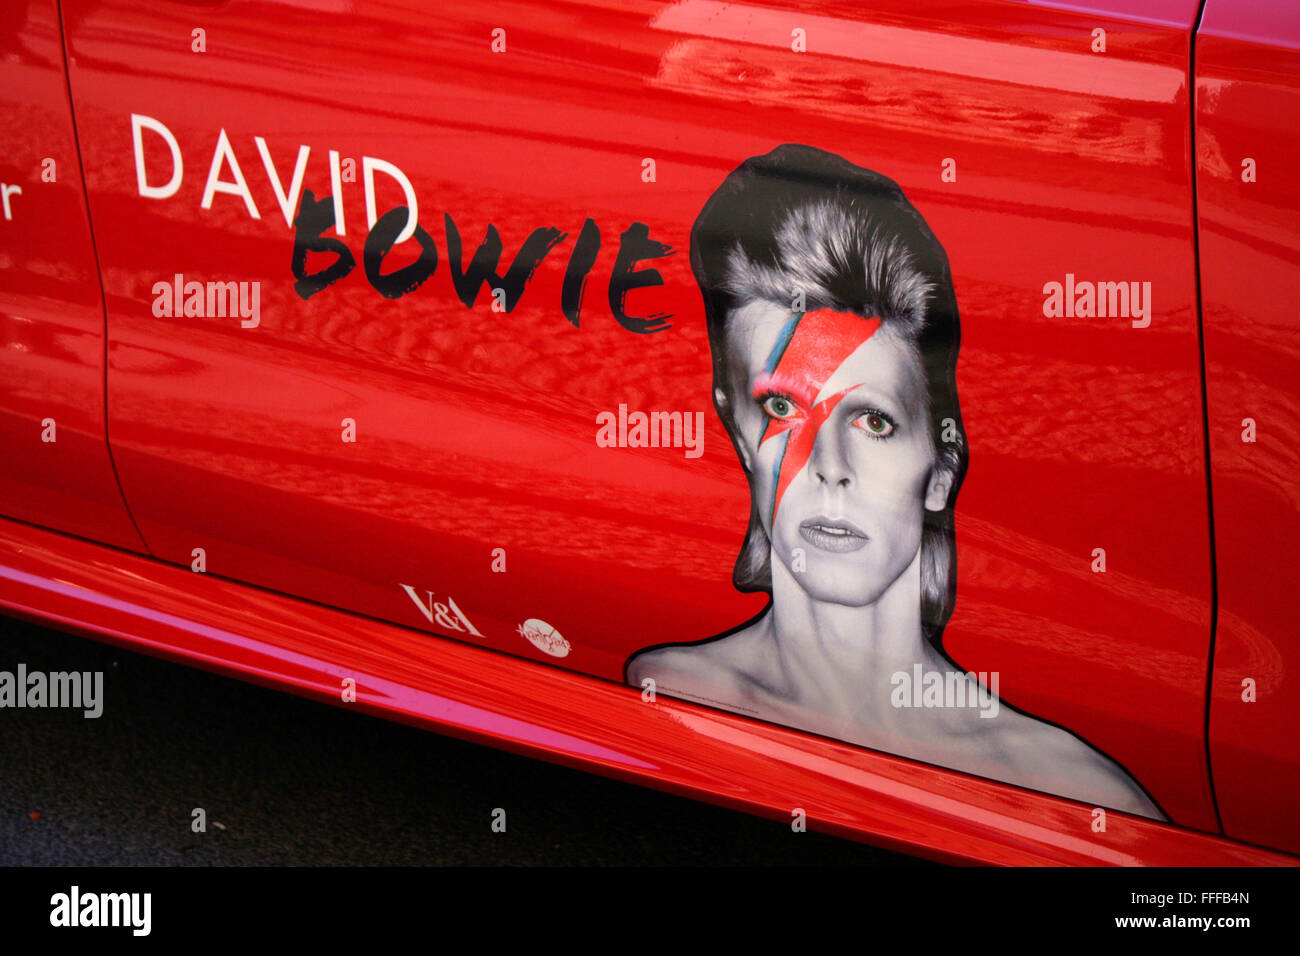 Werbung fuer David Bowie-Ausstellung im Martin-Gropius-Bau, Berlin. Stock Photo